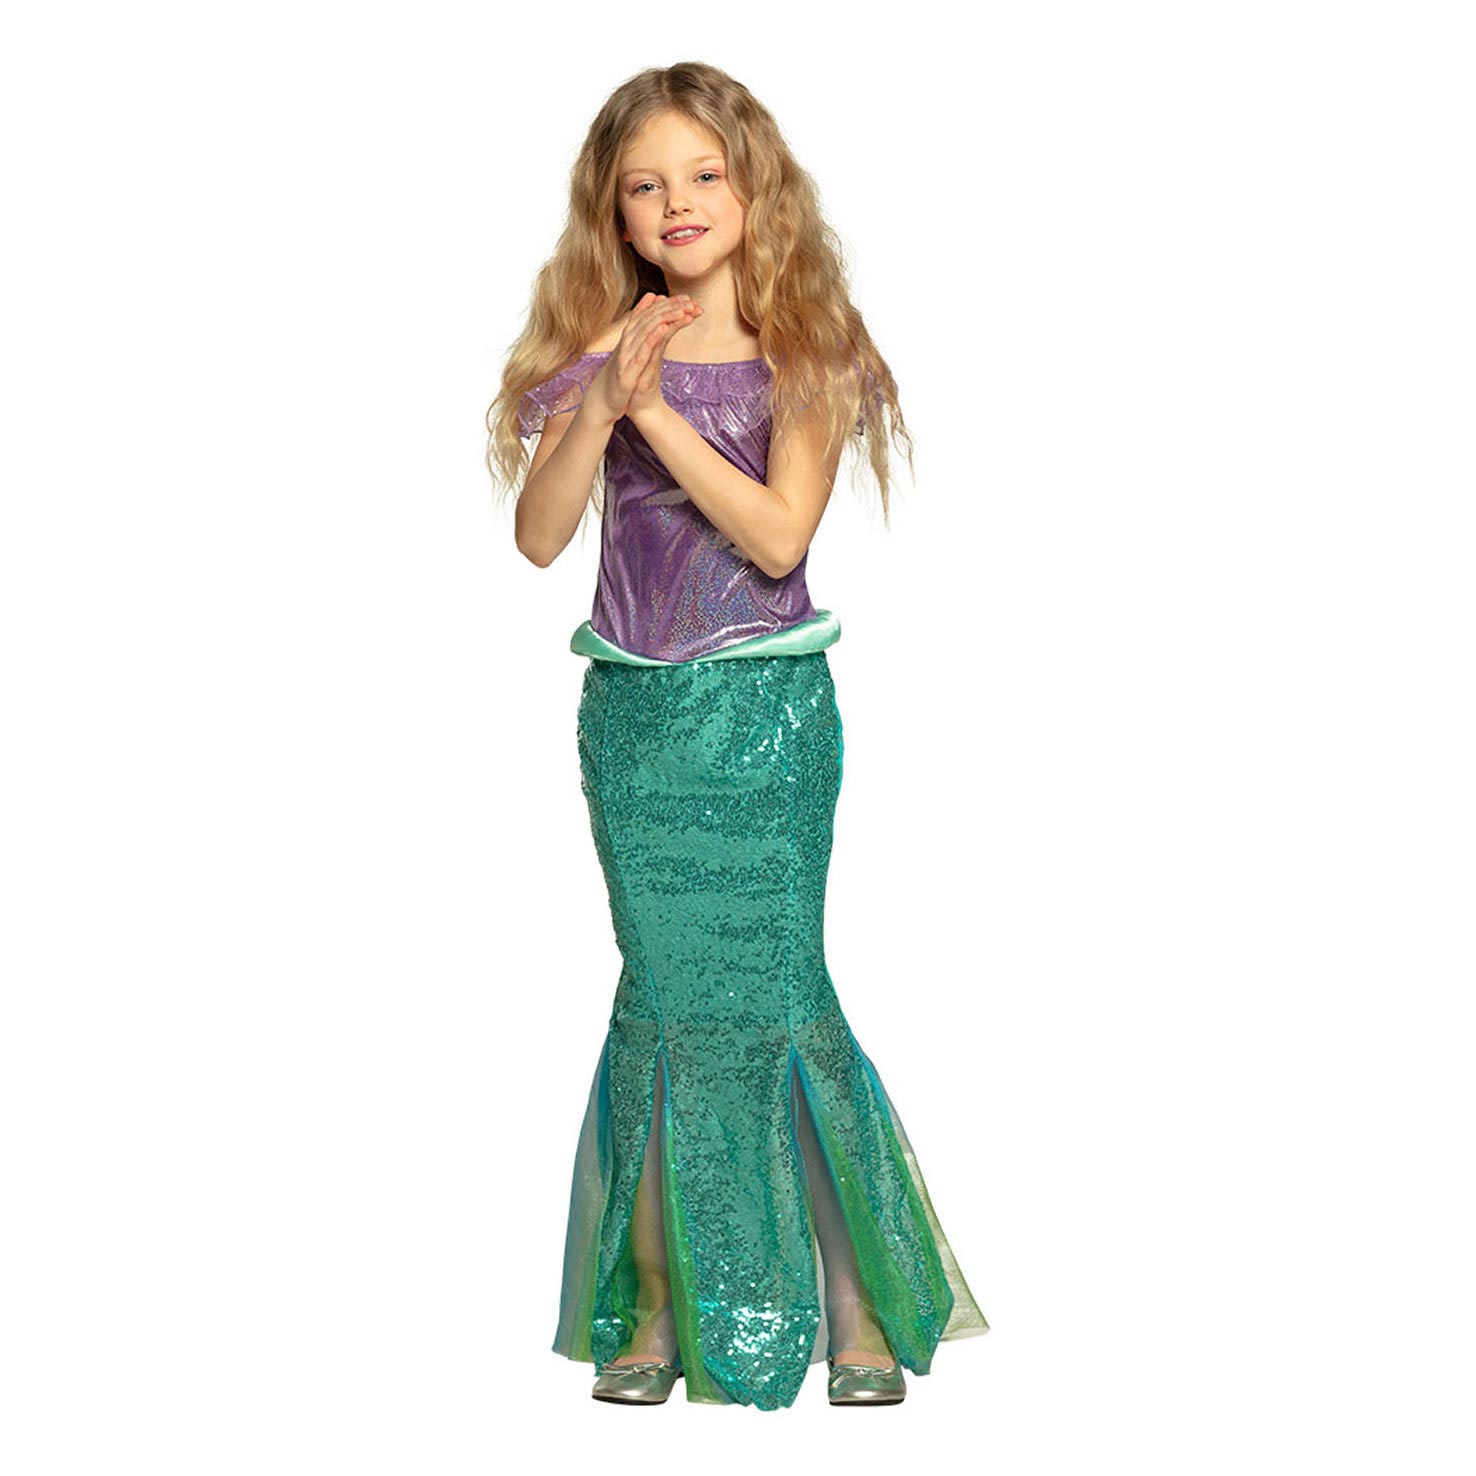 Costume de princesse sirène pour enfants, 4-6 ans